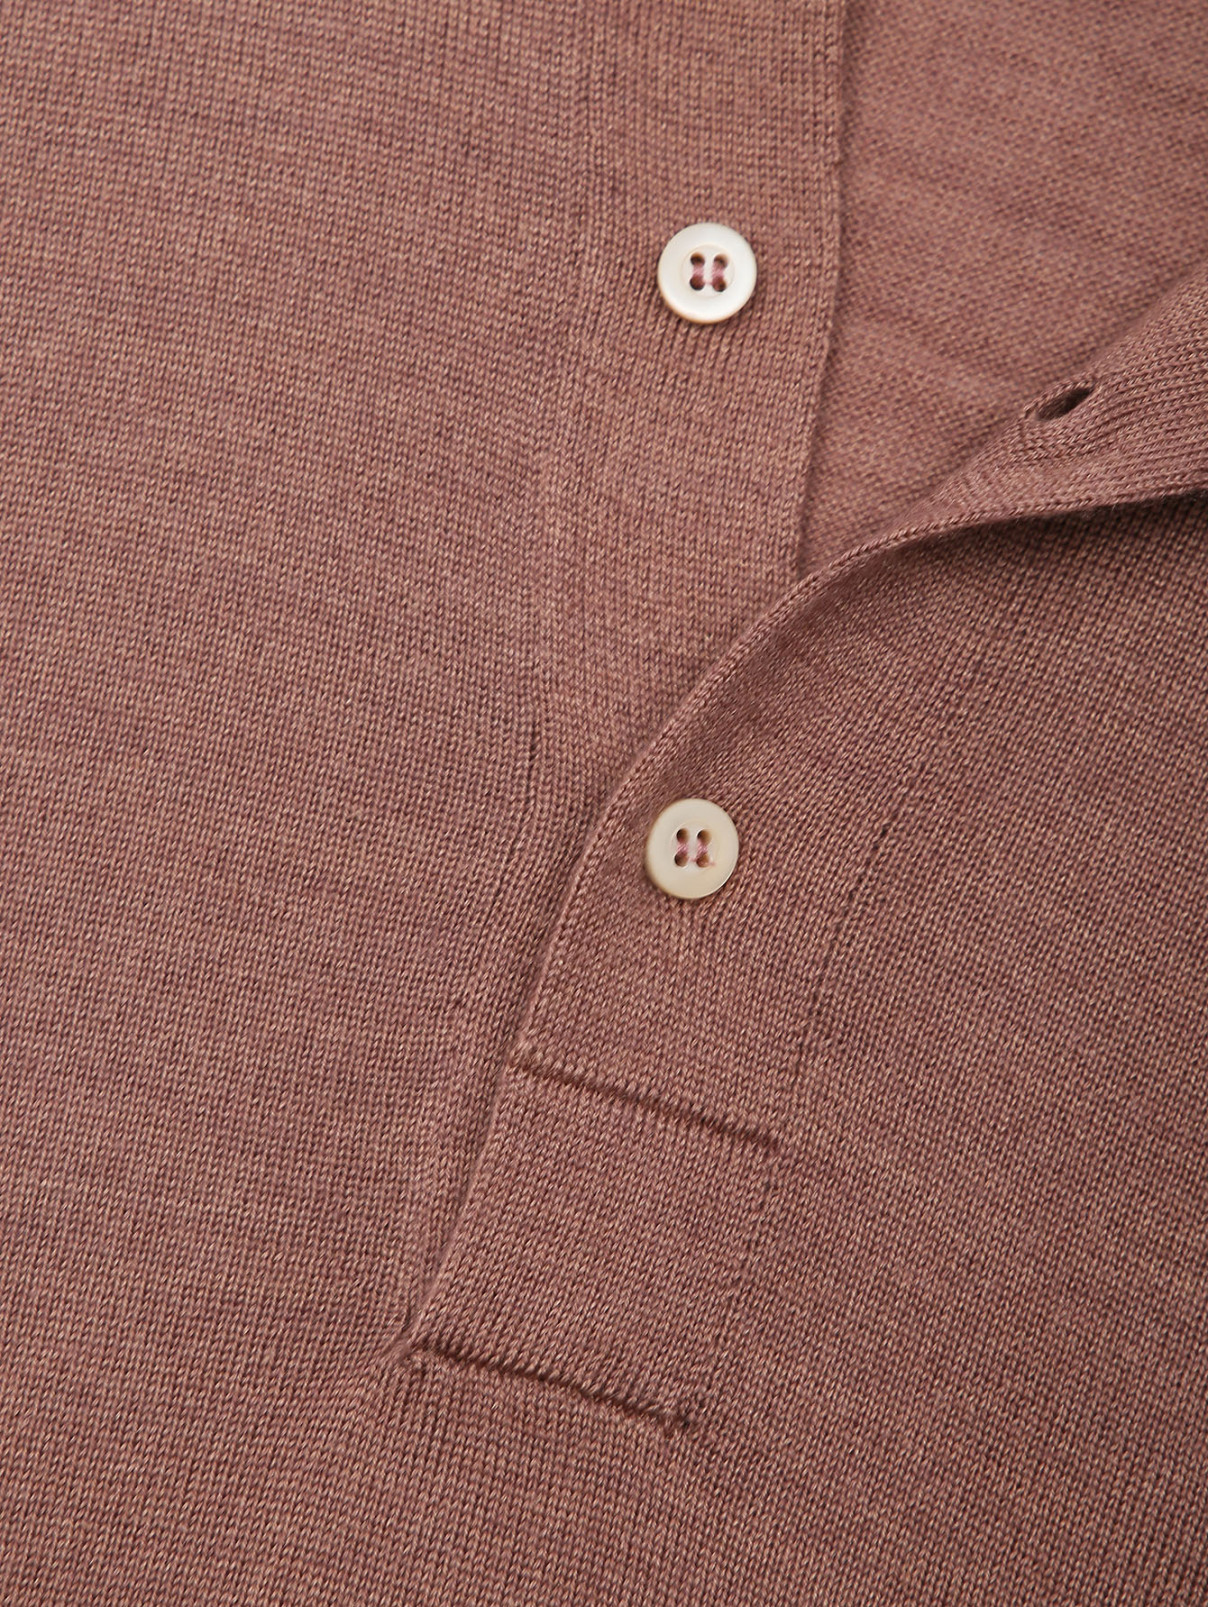 Джемпер из шерсти и шелка с воротом Piacenza Cashmere  –  Деталь  – Цвет:  Коричневый